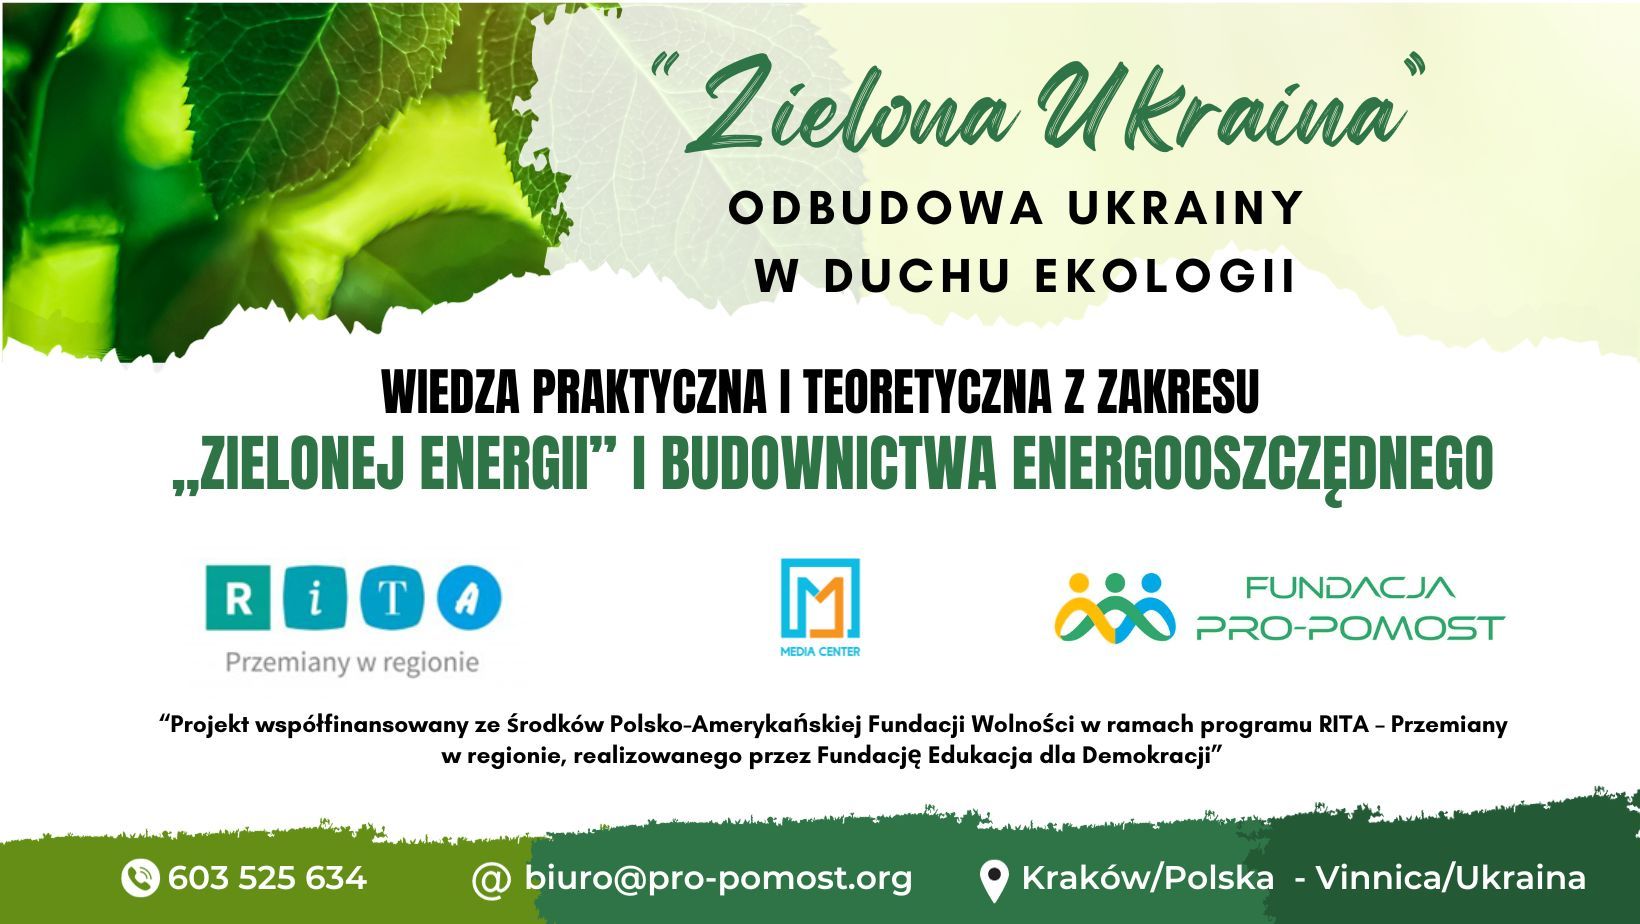 Zielona Ukraina - Odbudowa Ukrainy w duchu ekologii